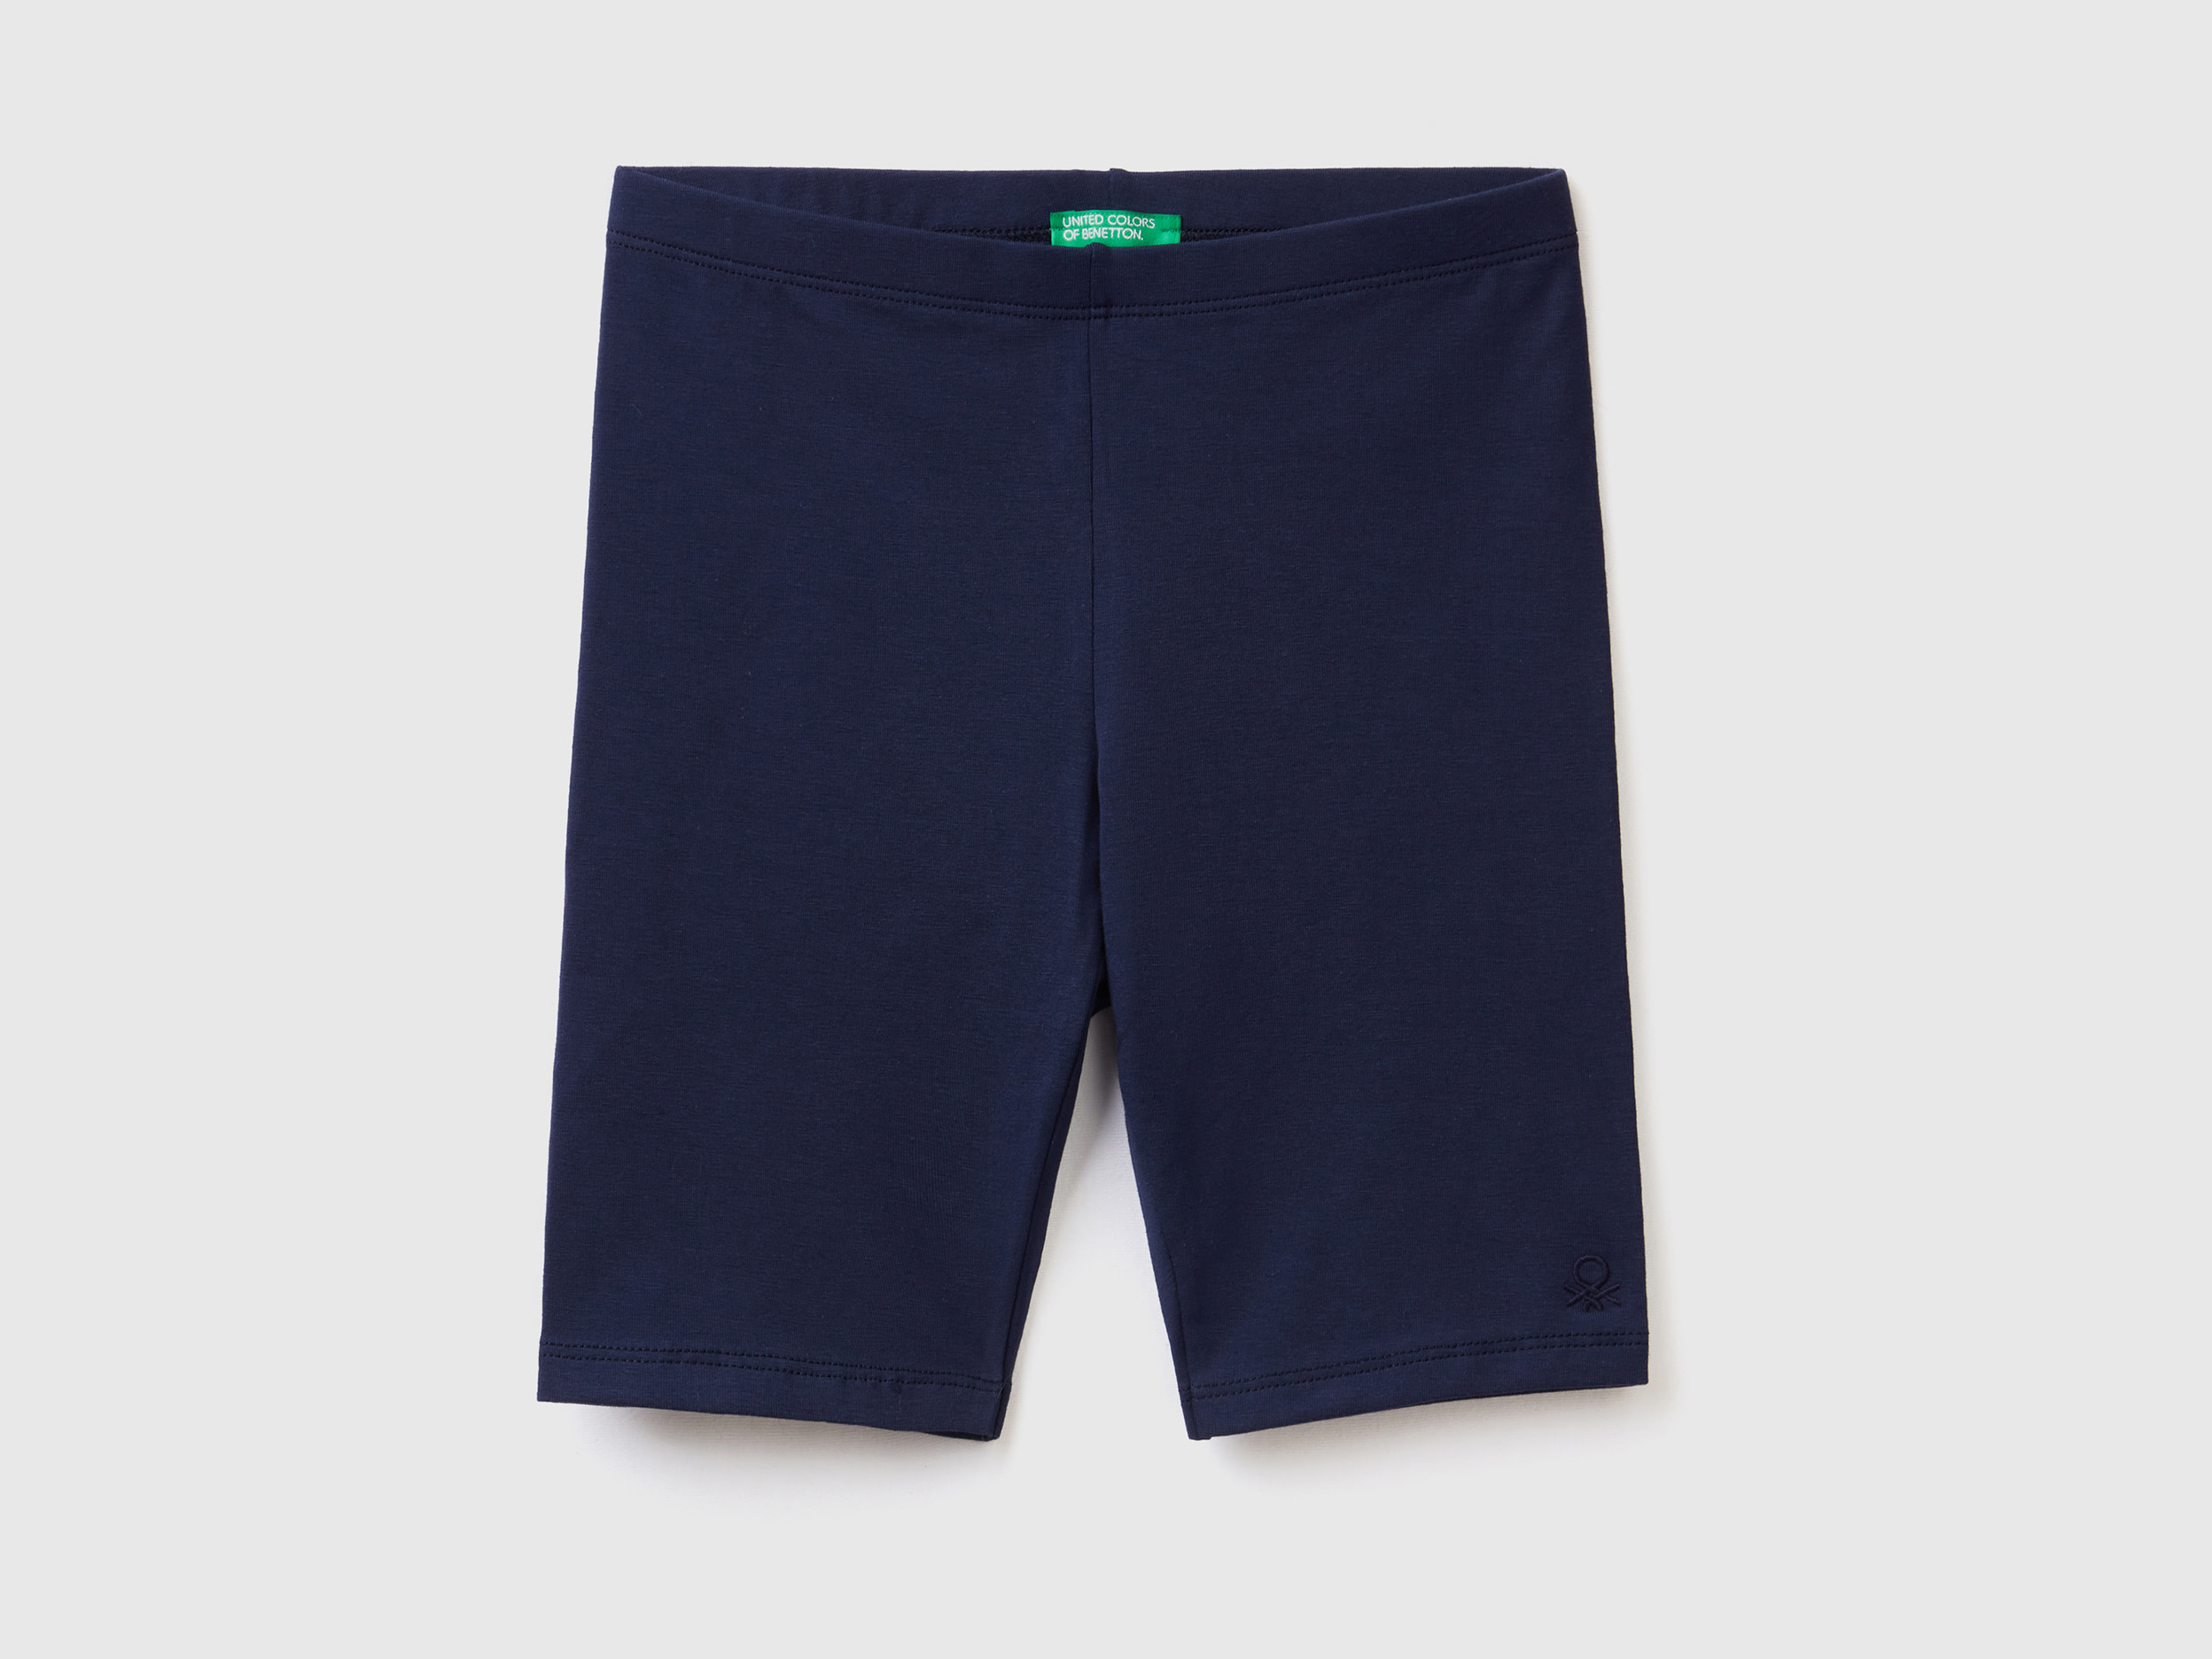 Benetton, Short Leggings In Stretch Cotton, size 3XL, Dark Blue, Kids